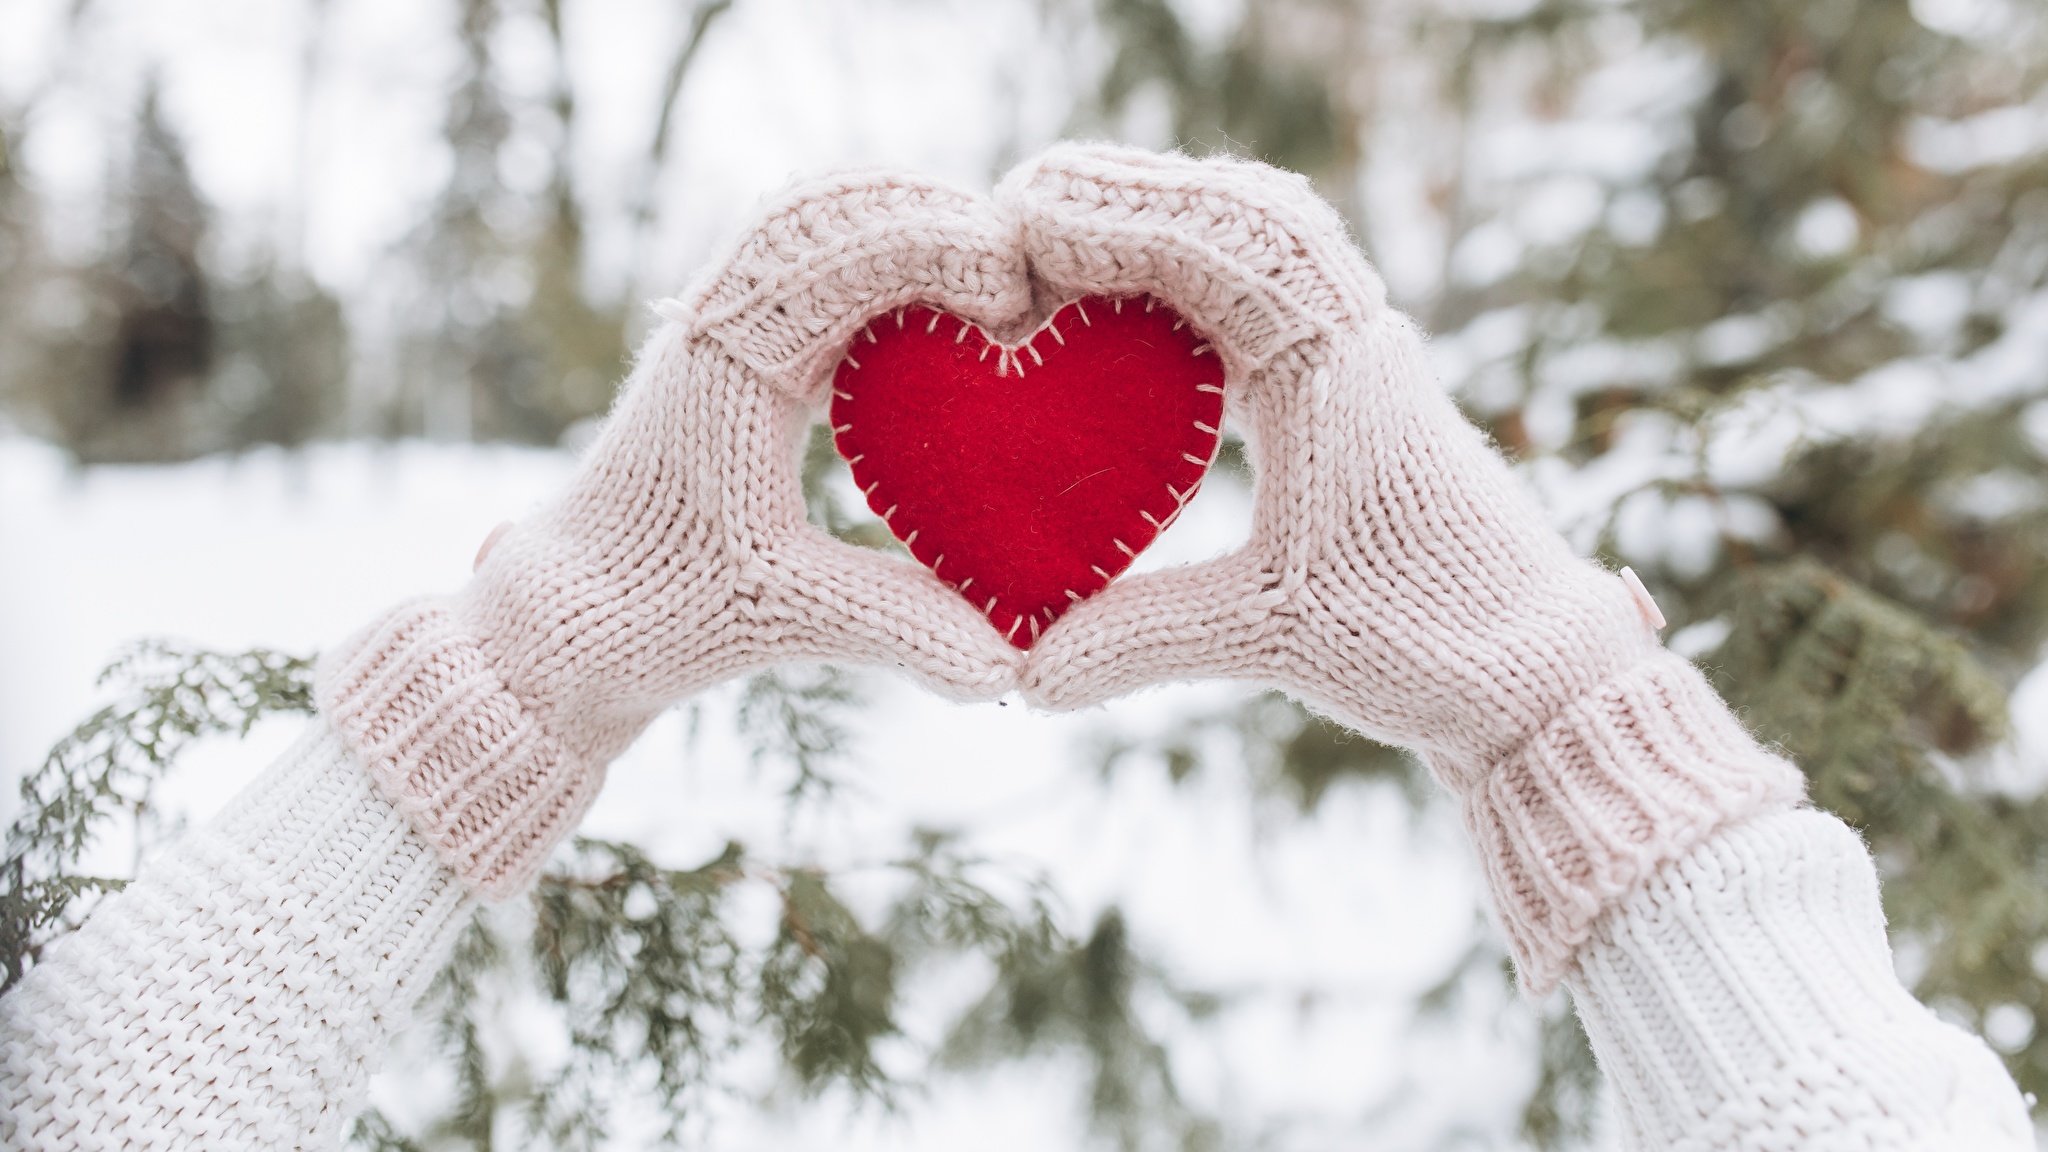 Св тепло. Зимняя романтика. Сердечко на снегу. Руки в варежках. Сердце из снега в руках.